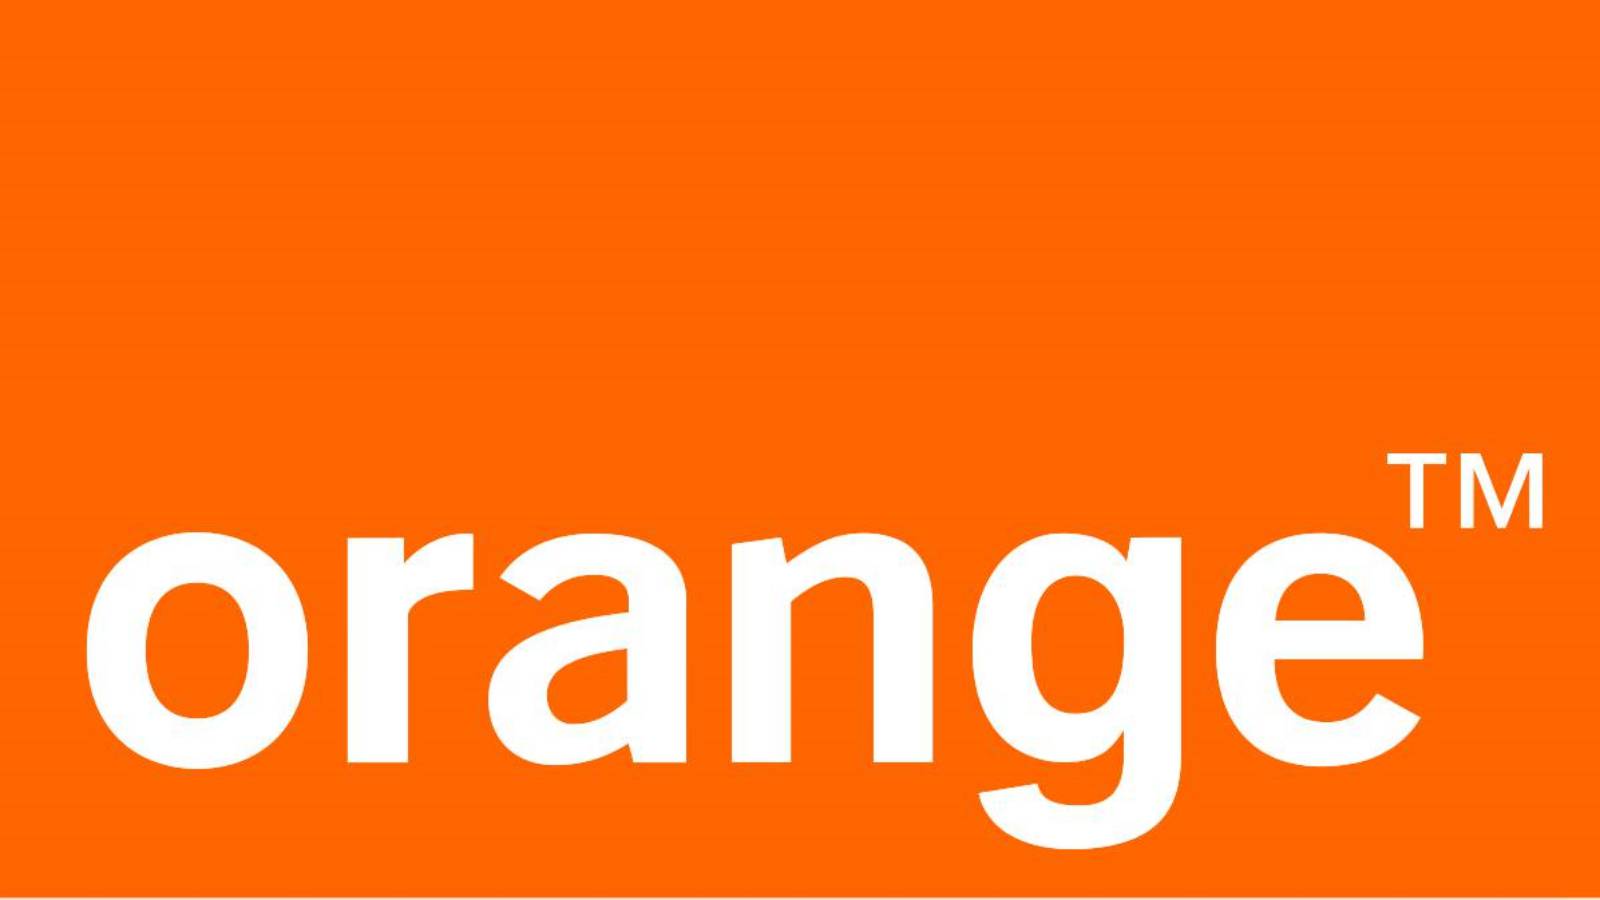 Oranger Alarm, z.B